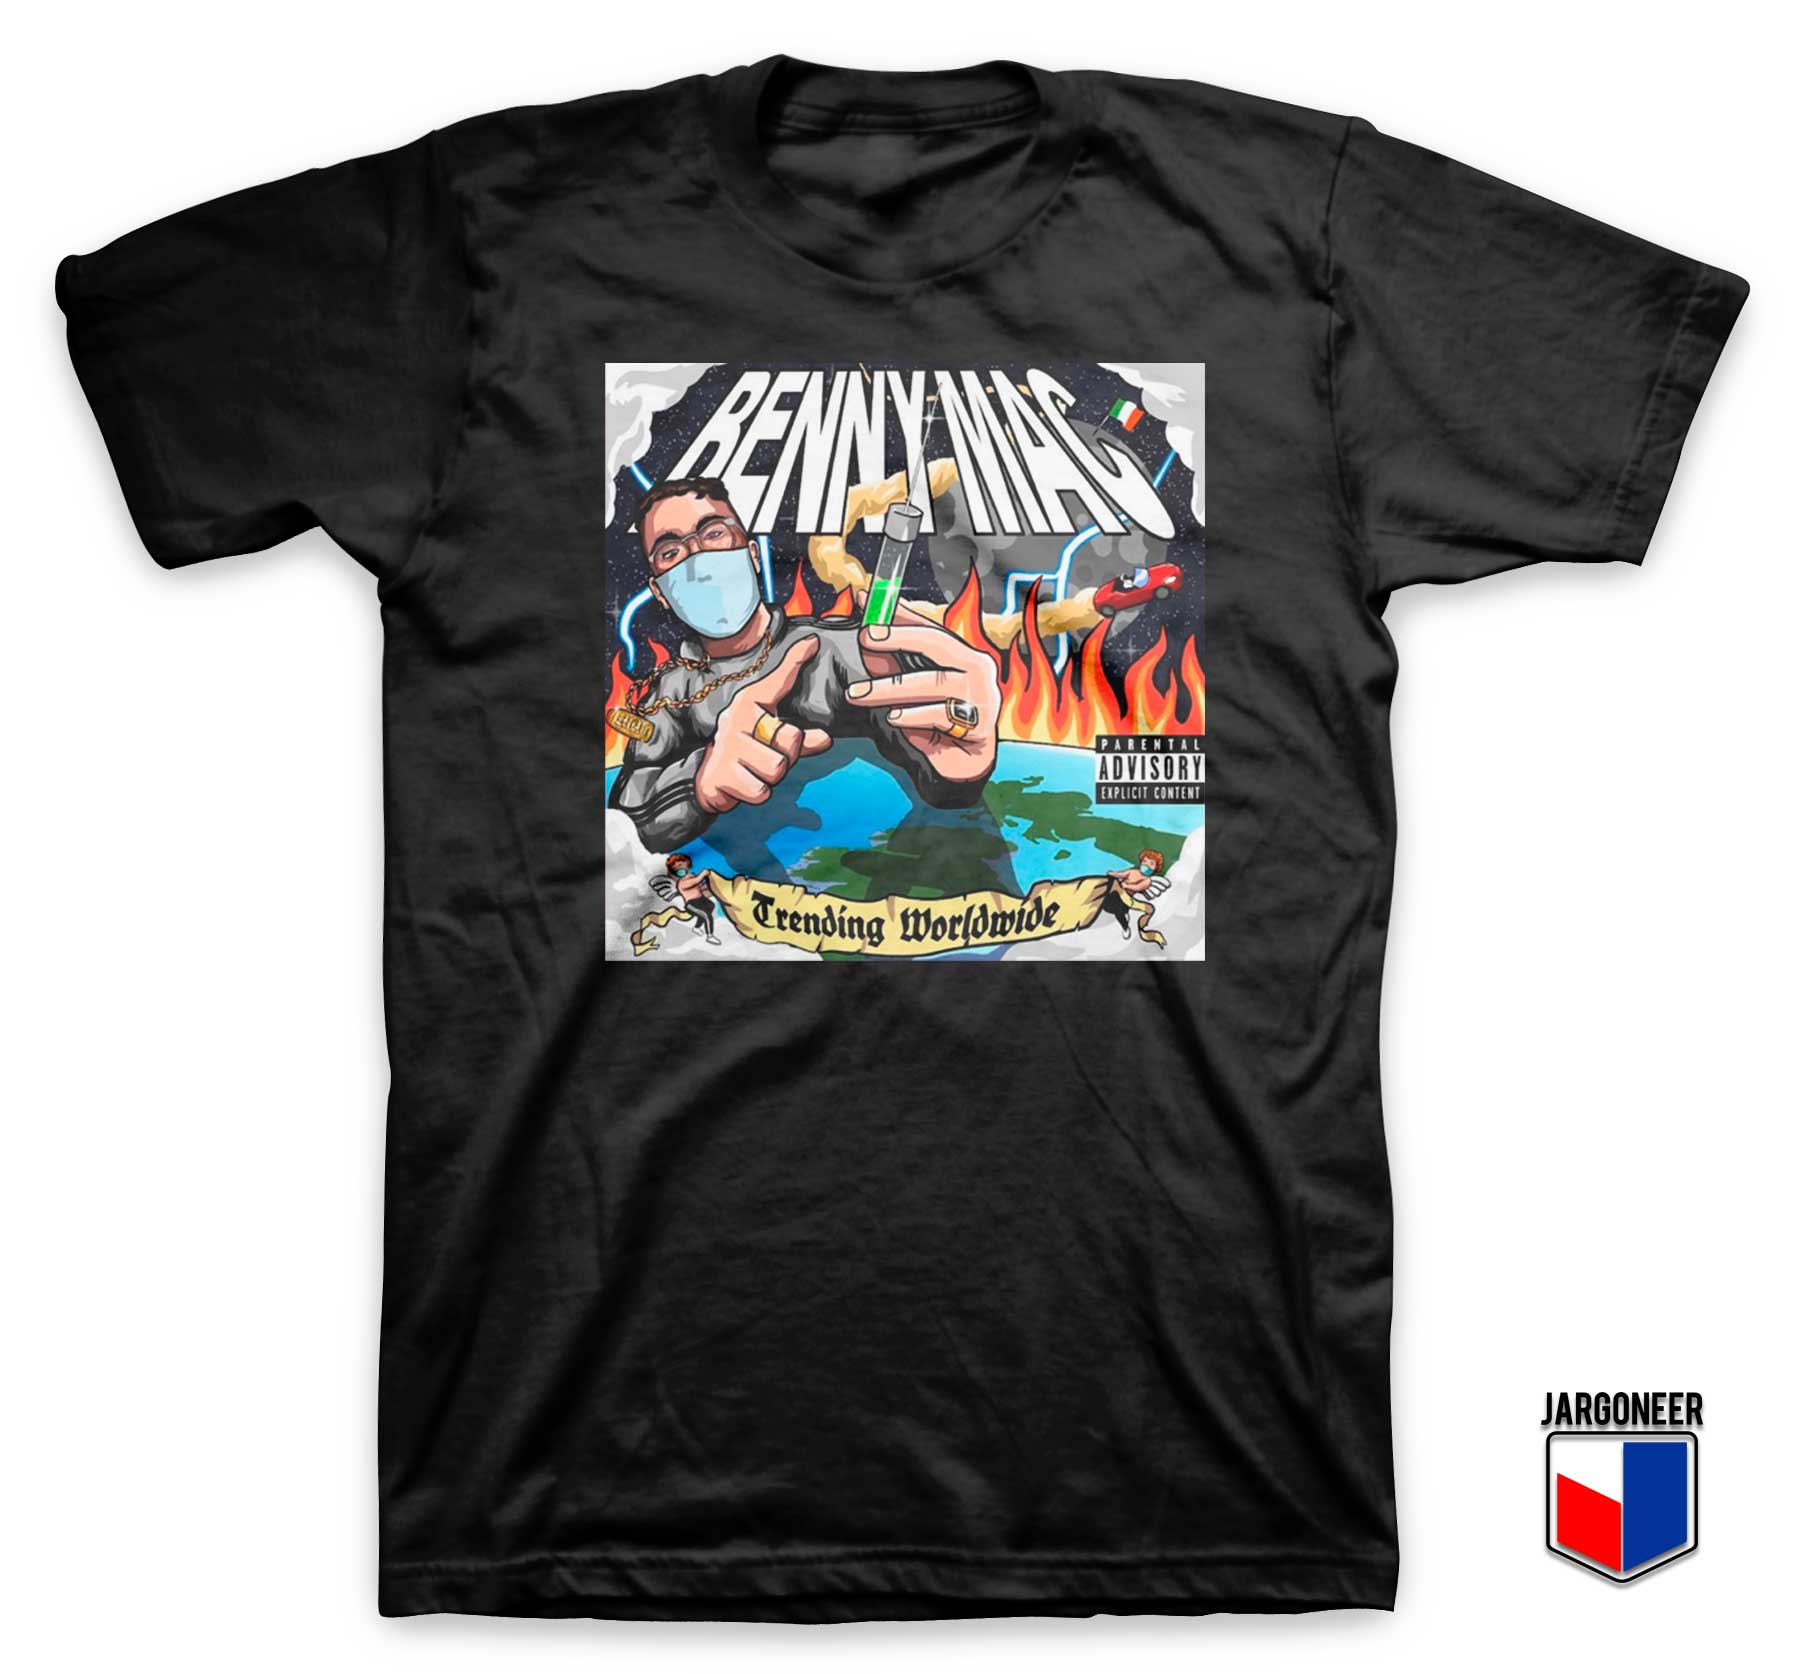 Blow That Muck Music T Shirt - Shop Unique Graphic Cool Shirt Designs